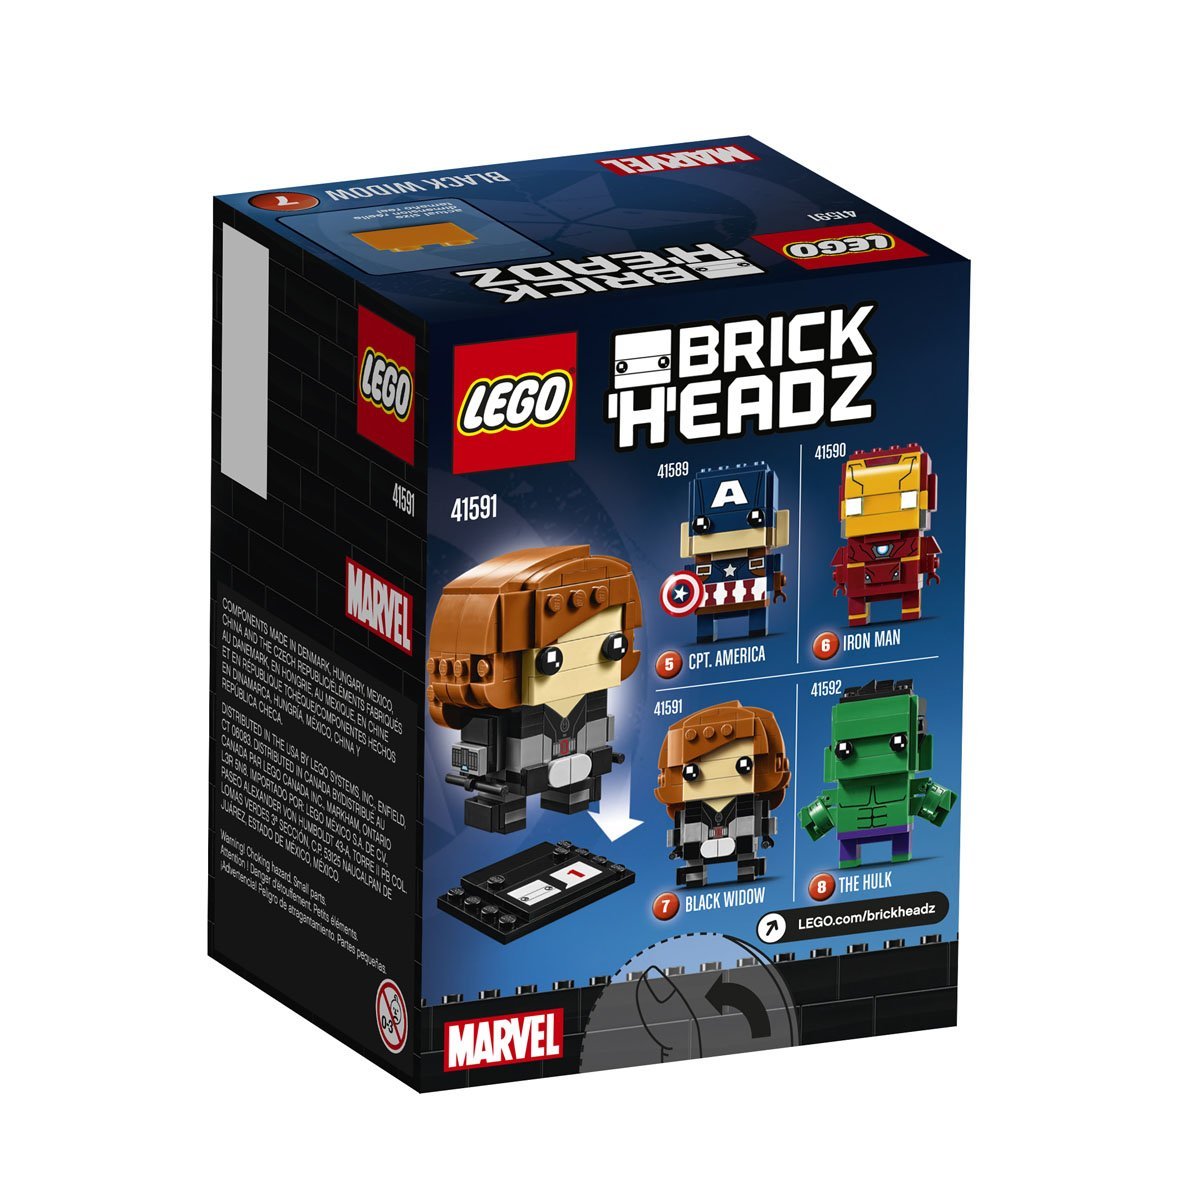 Brickheadz Black Widow Lego